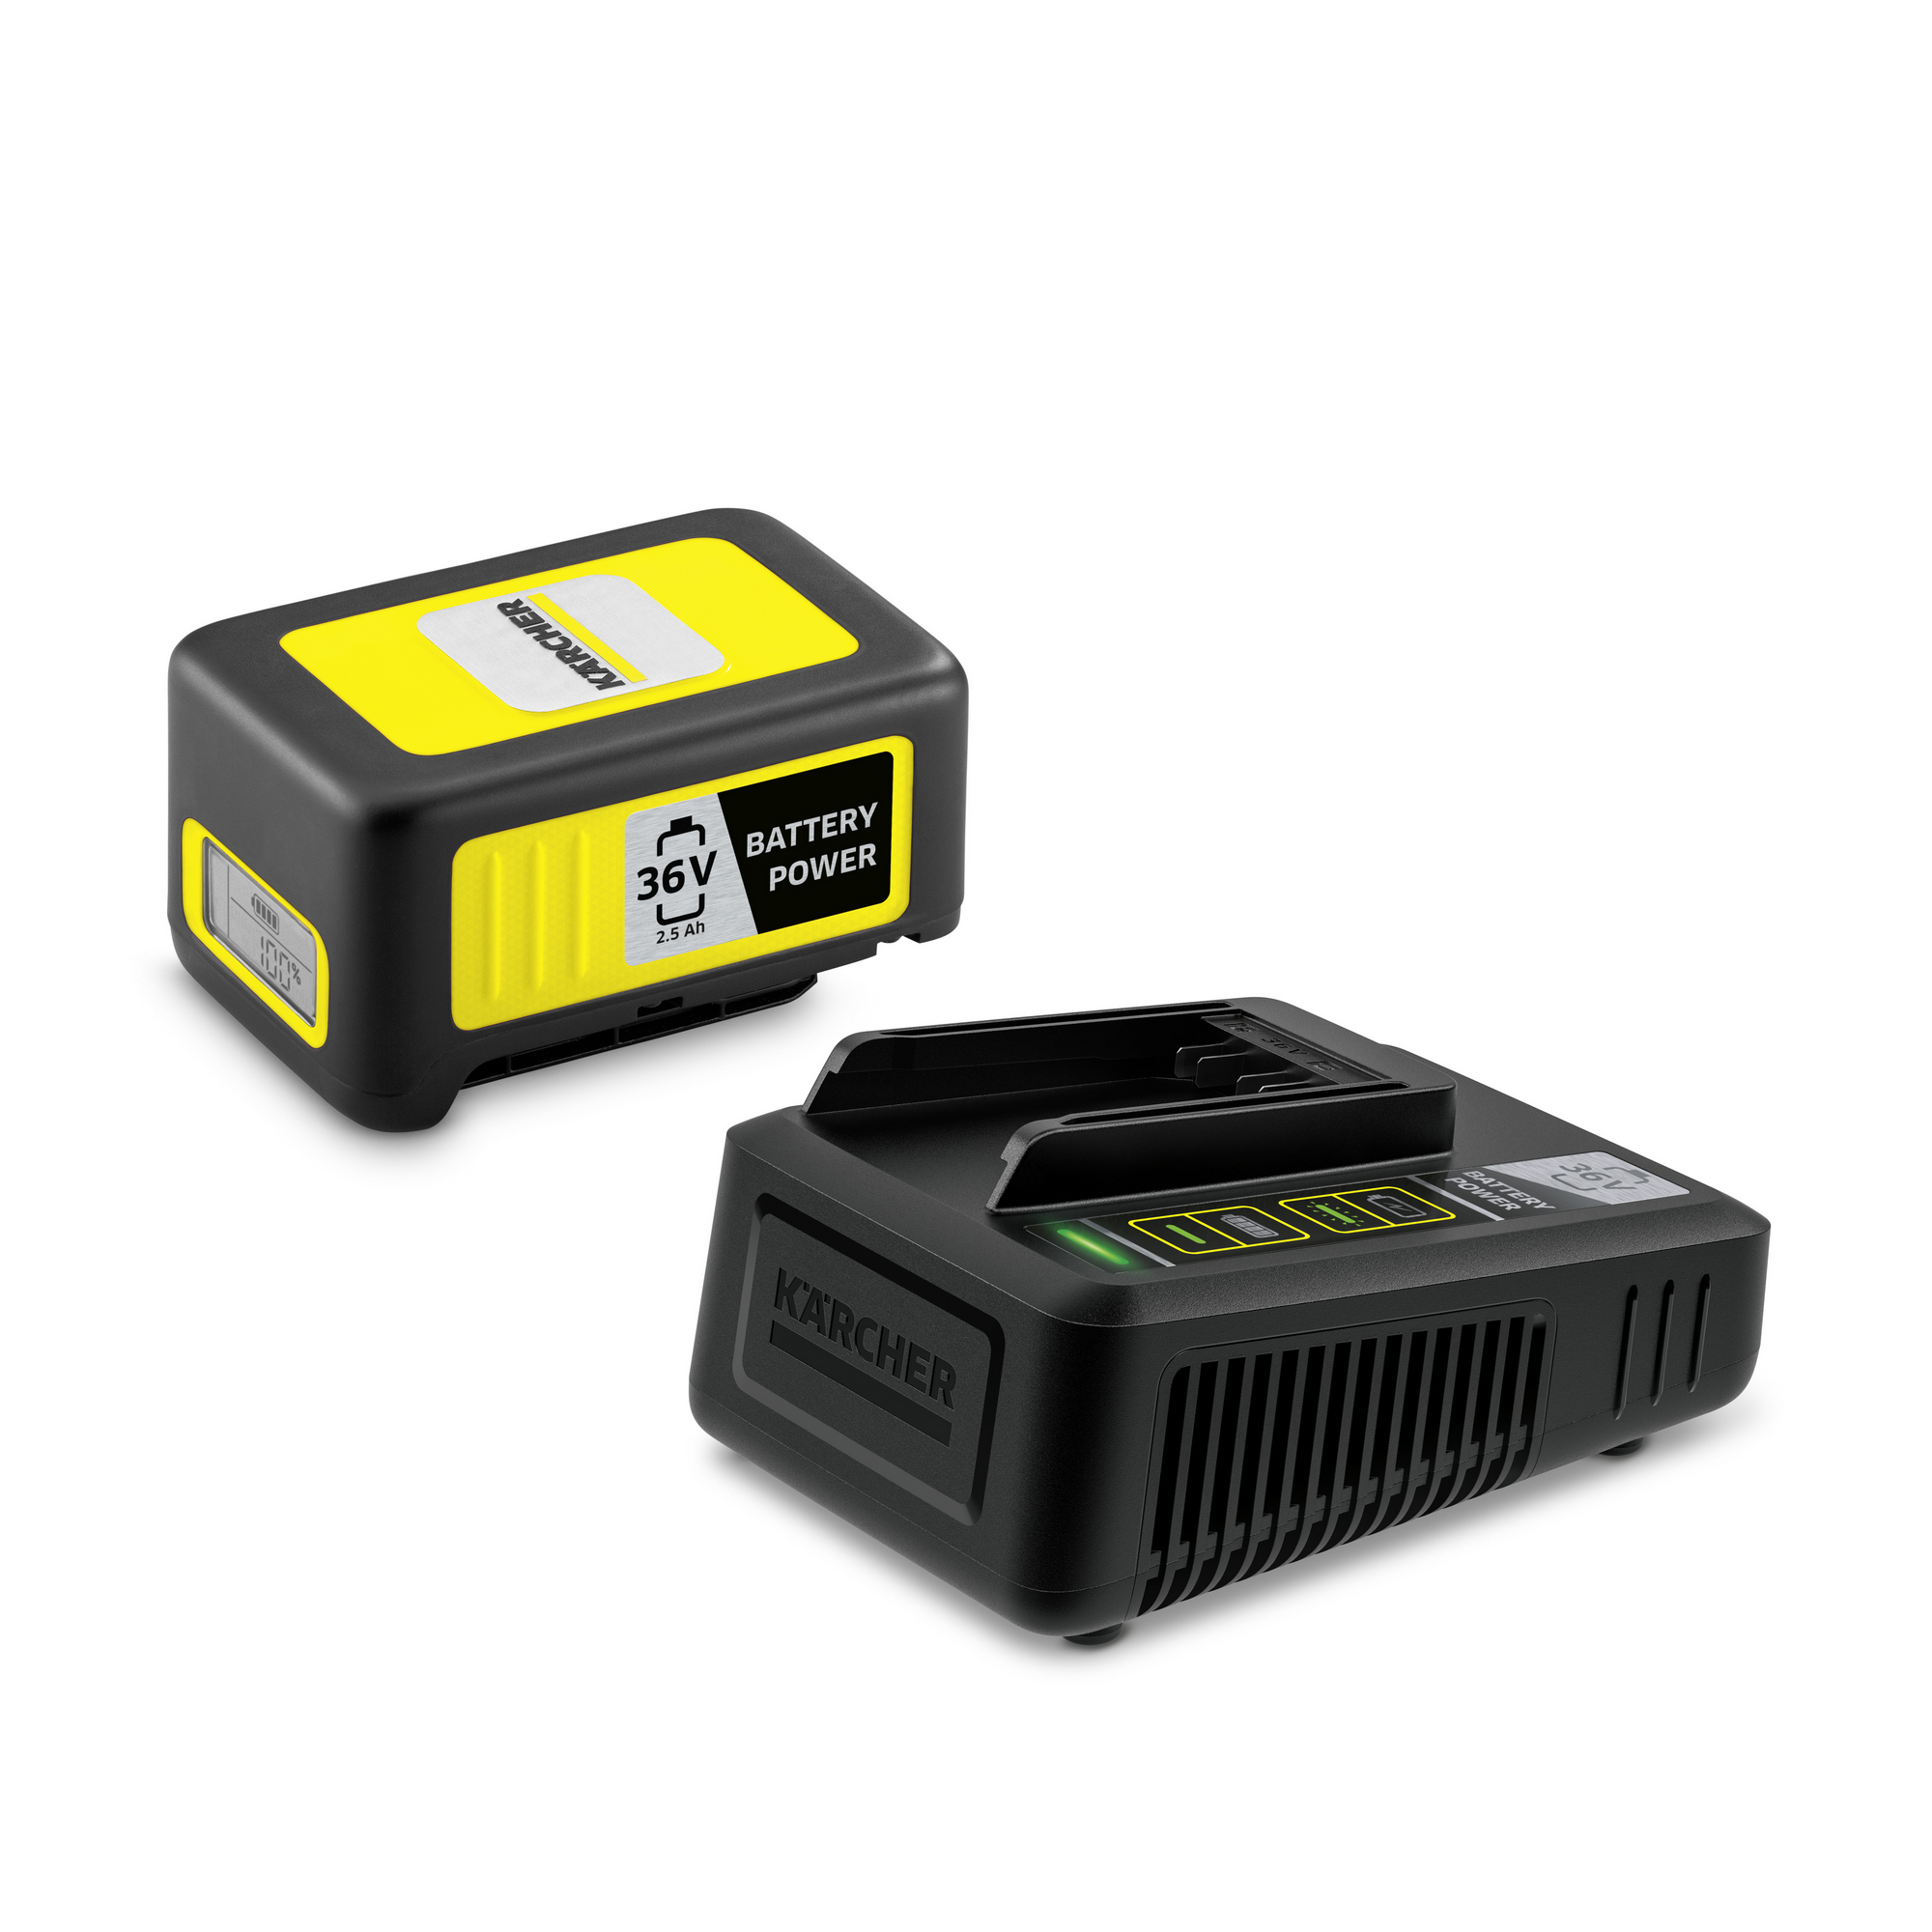 Starter-Kit 'Battery Power 36/25' Wechselakku mit Schnellladegerät, 36 V 2,5 Ah + product picture